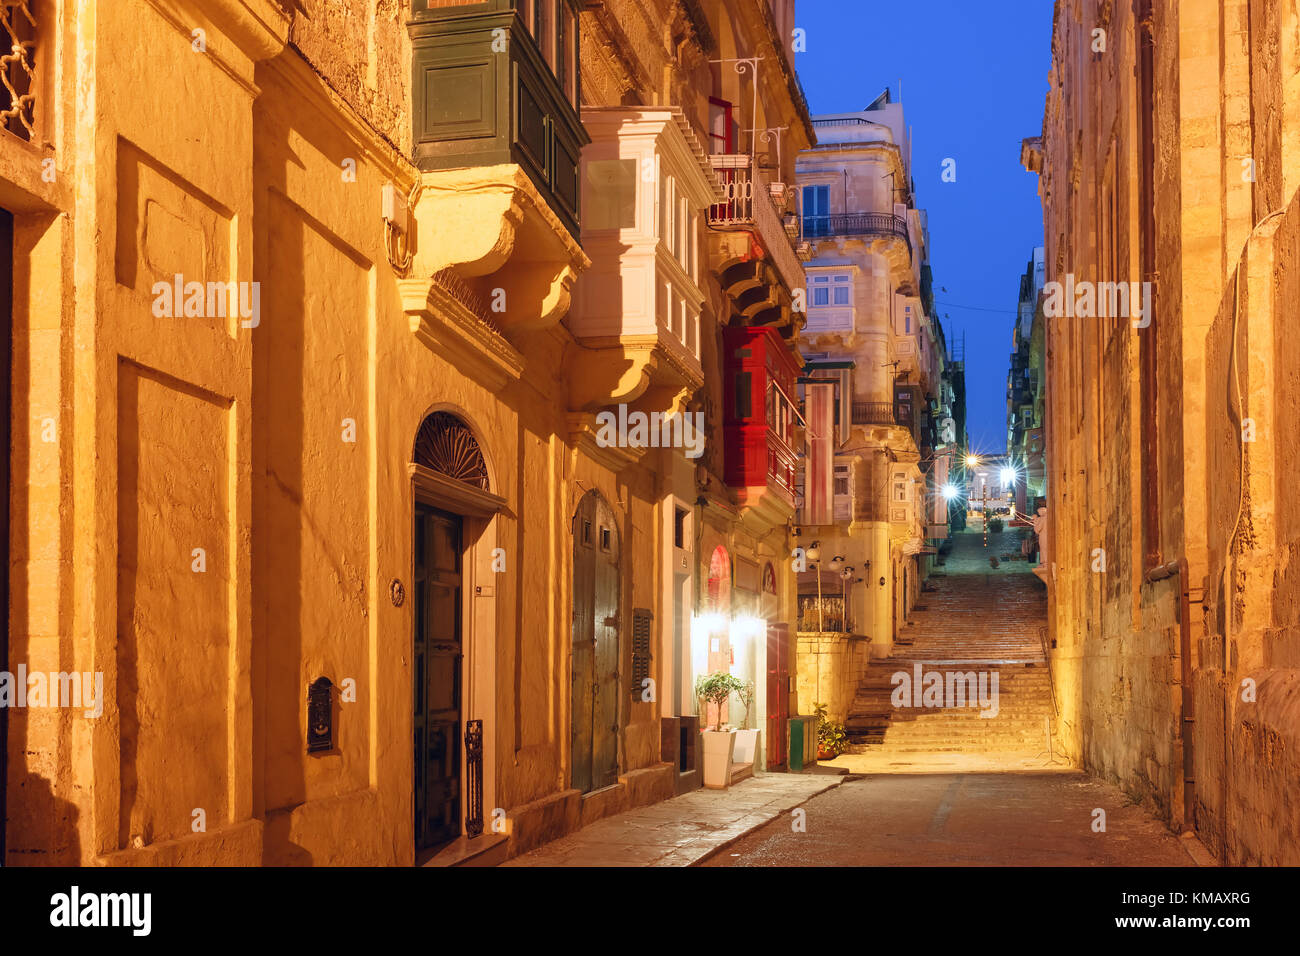 Night street in old town of Valletta, Malta Stock Photo